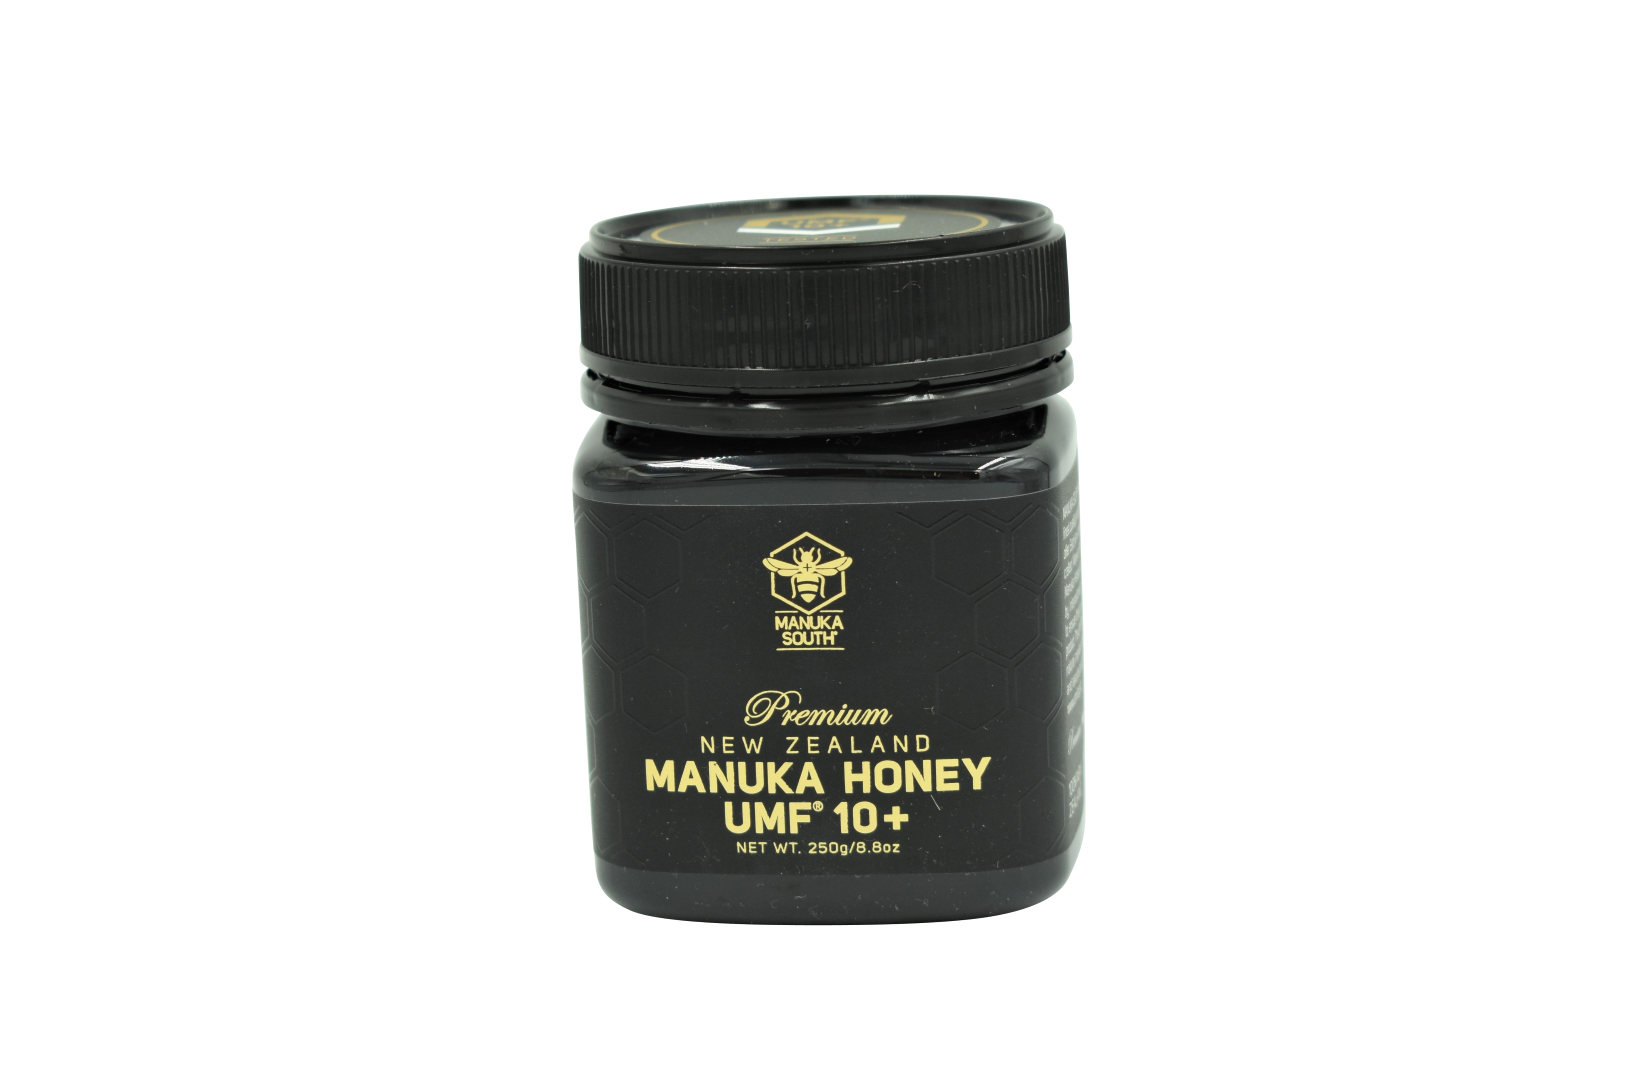 Manuka South Manuka Honey UMF 10+